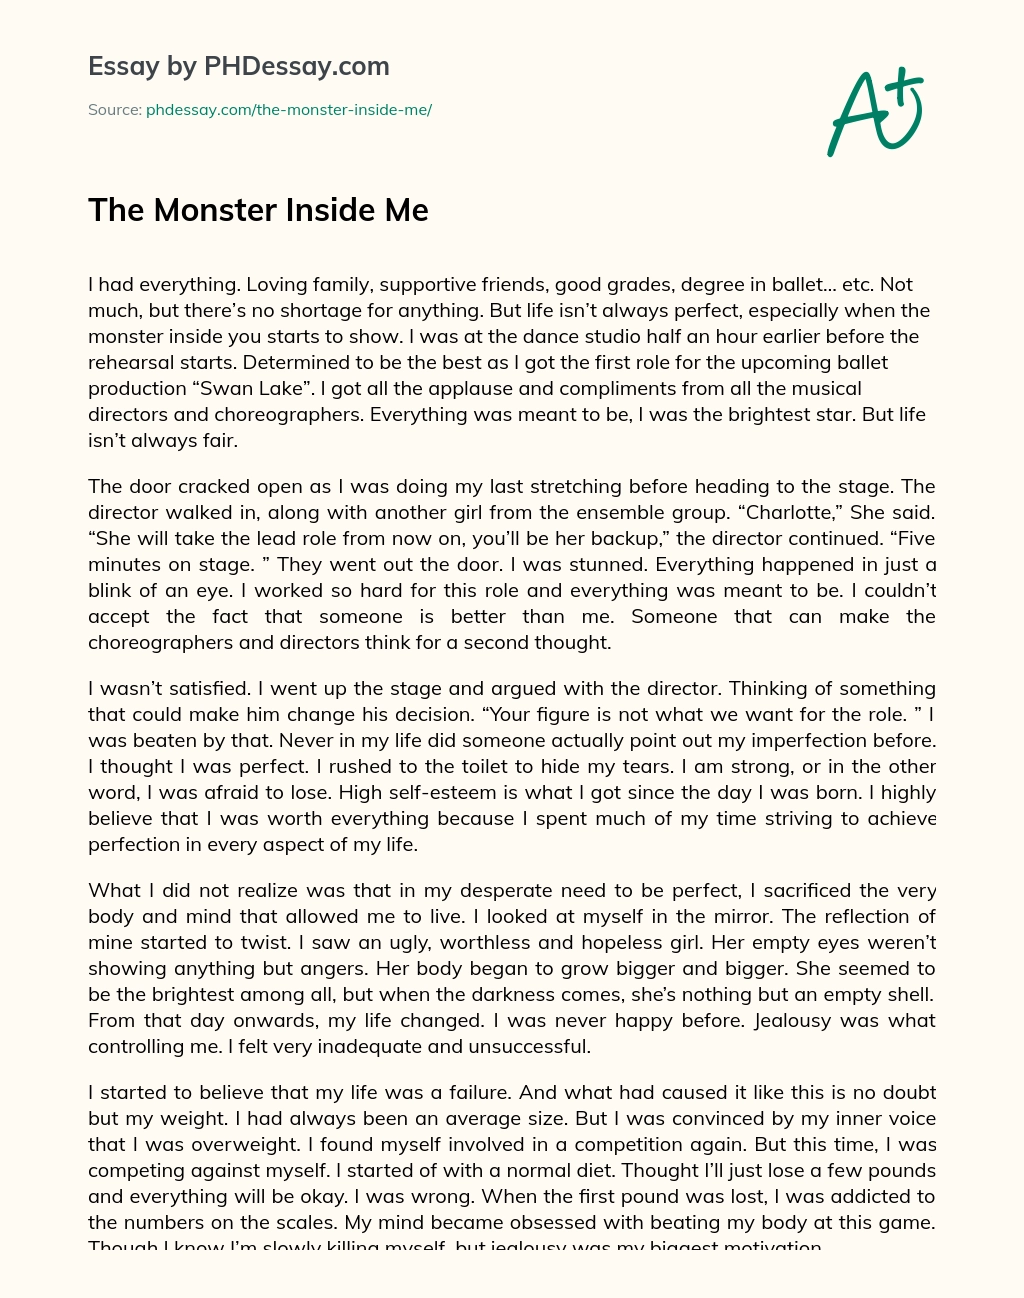 The Monster Inside Me essay